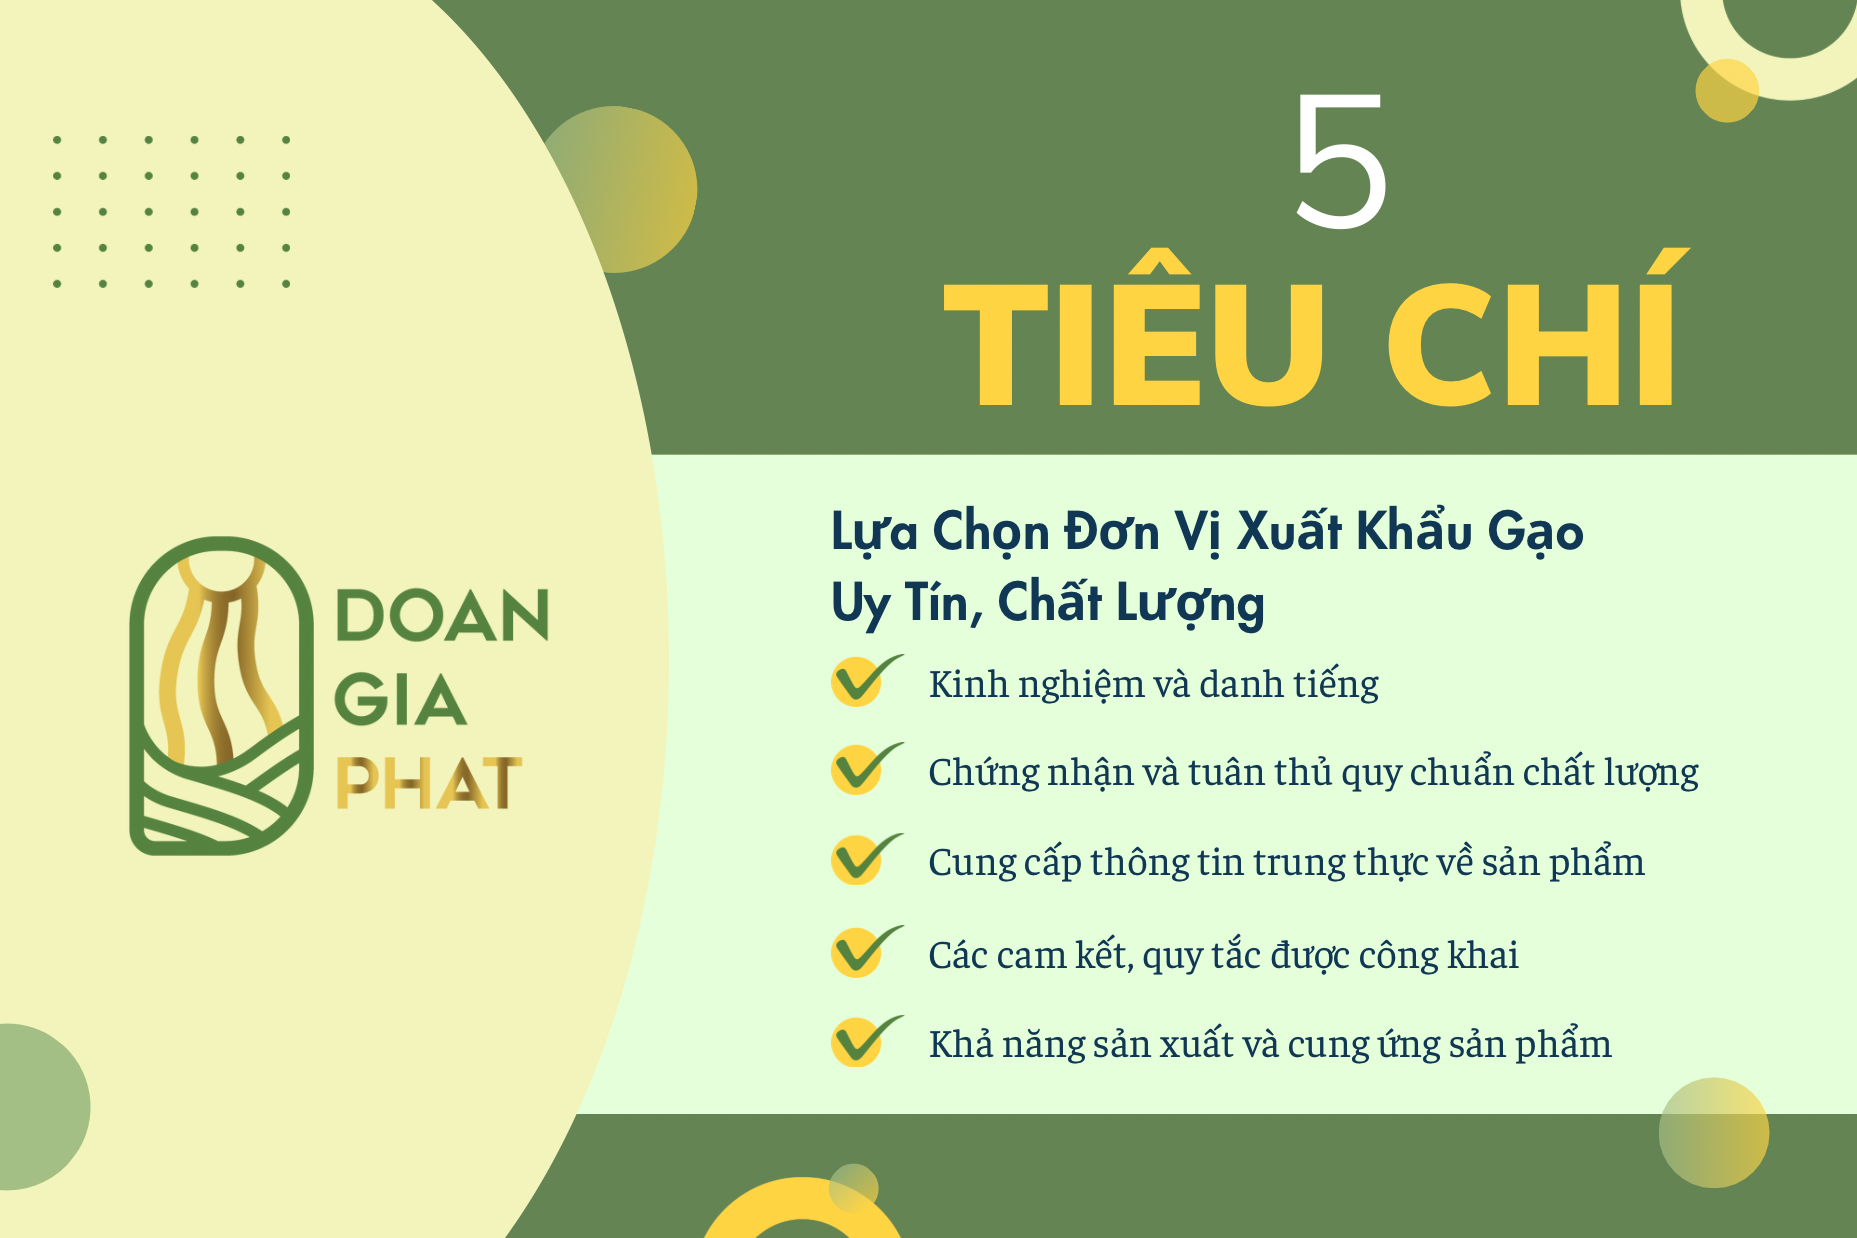 5-tieu-chi-lua-chon-don-vi-xuat-khau-gao-uy-tin-chat-luong